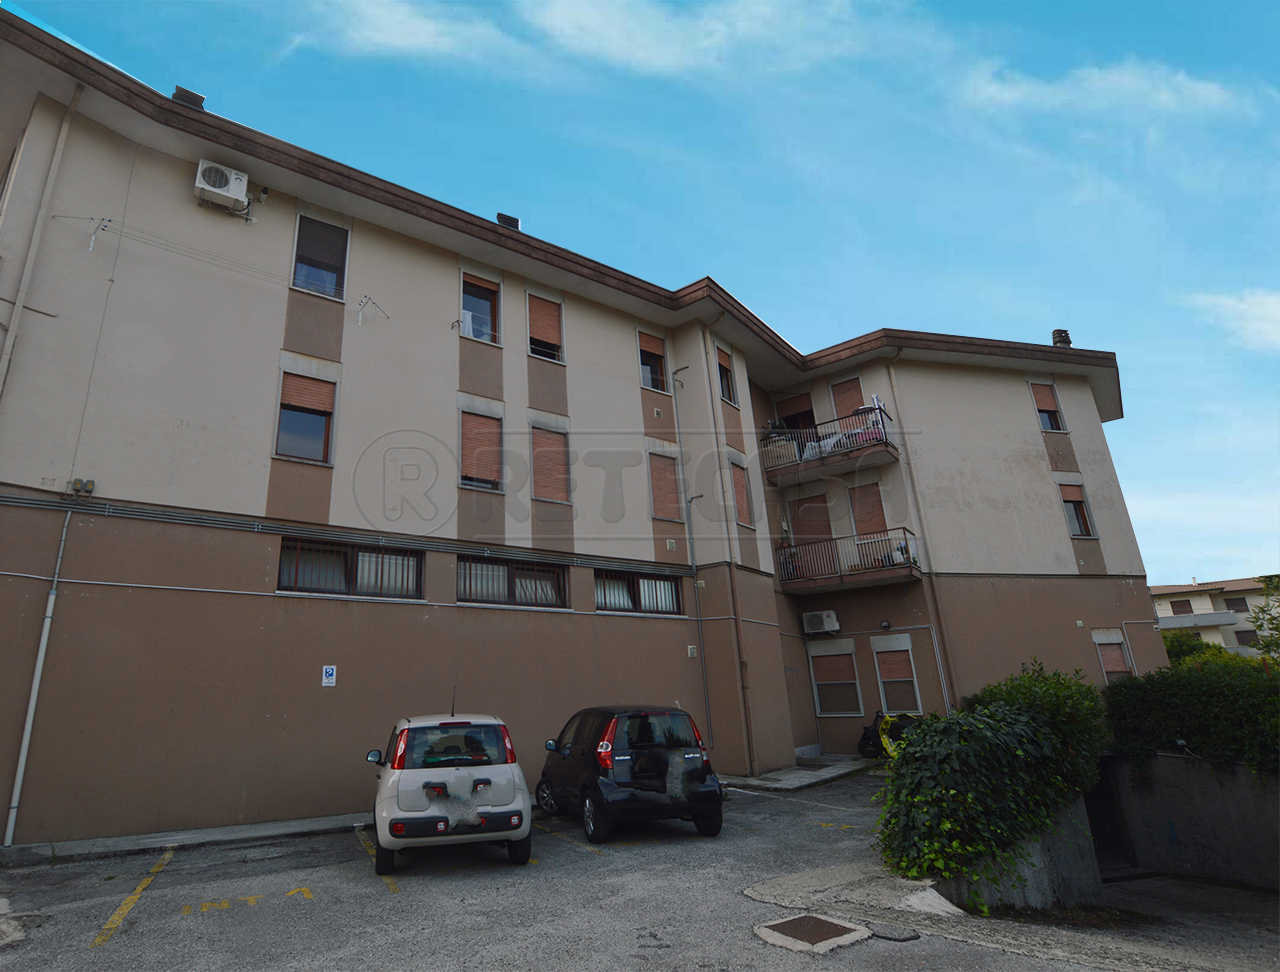 Appartamento in vendita a Castelgomberto, 4 locali, prezzo € 92.000 | PortaleAgenzieImmobiliari.it